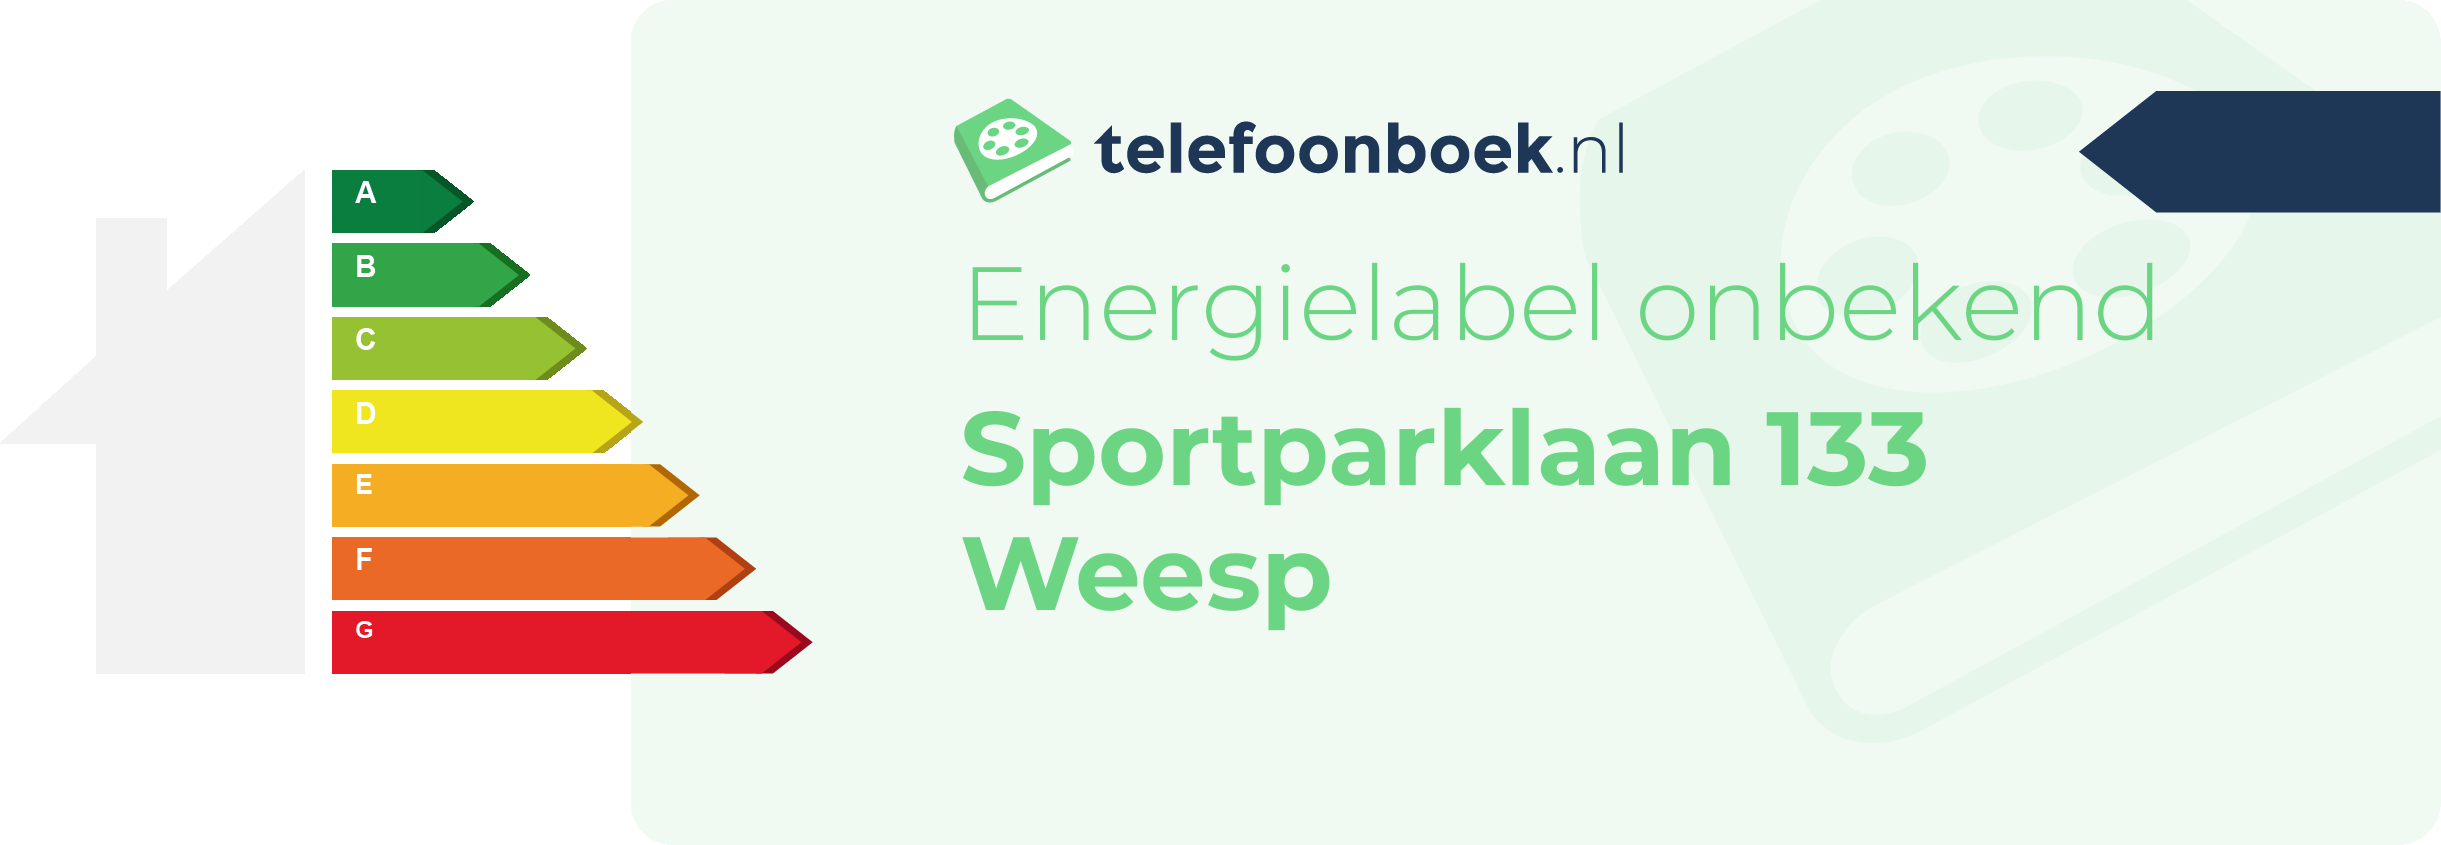 Energielabel Sportparklaan 133 Weesp